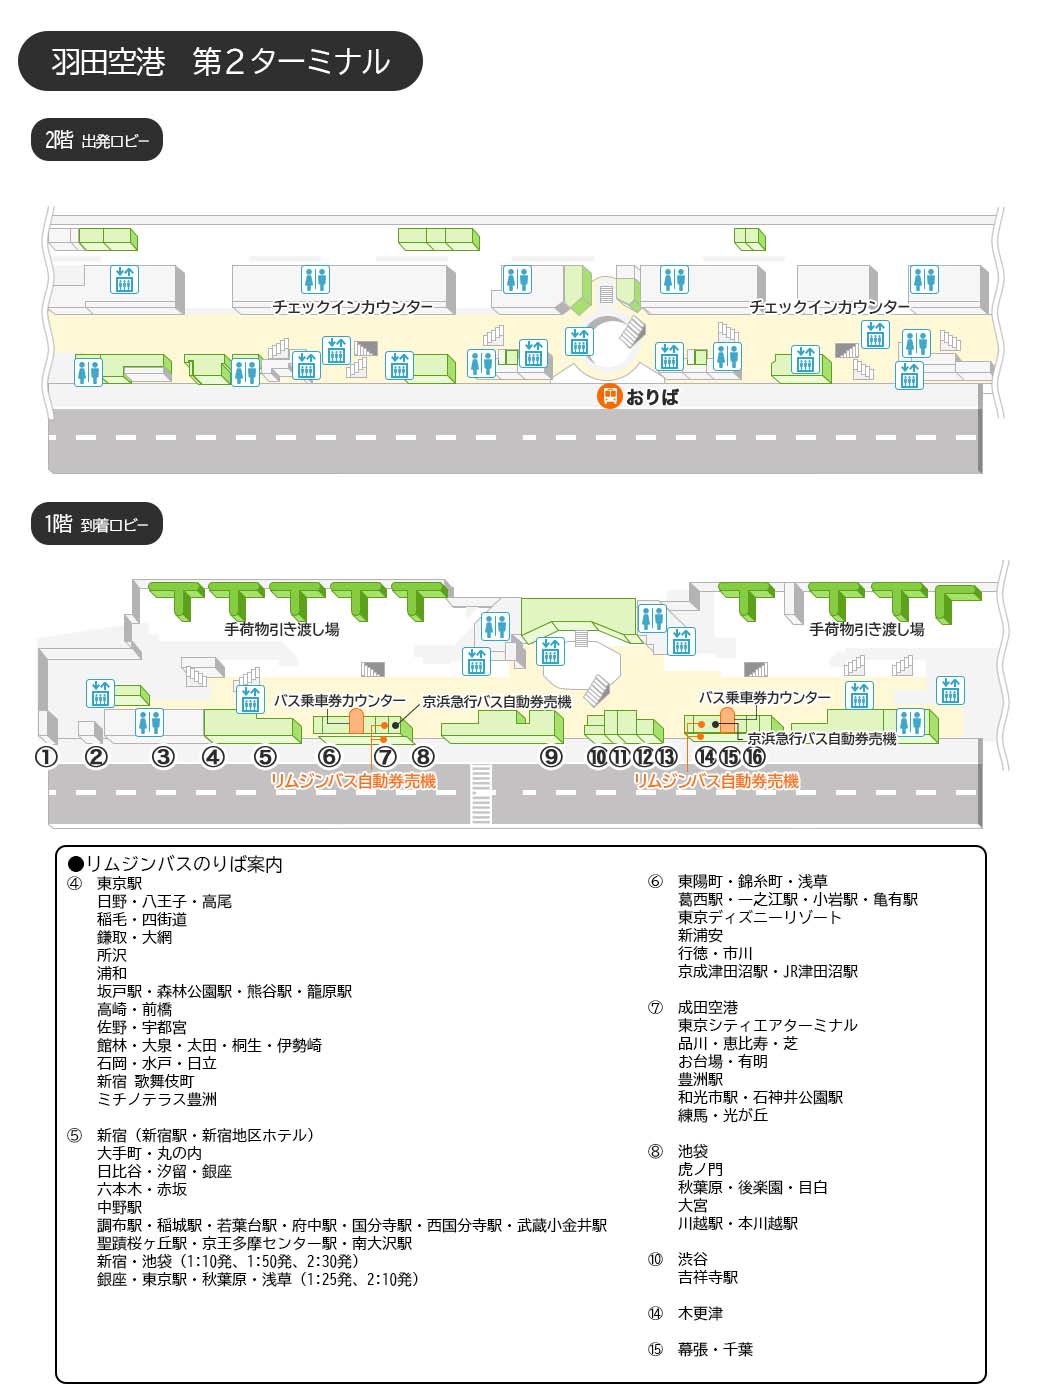 リムジンバス時刻表 リムジンバスの東京空港交通